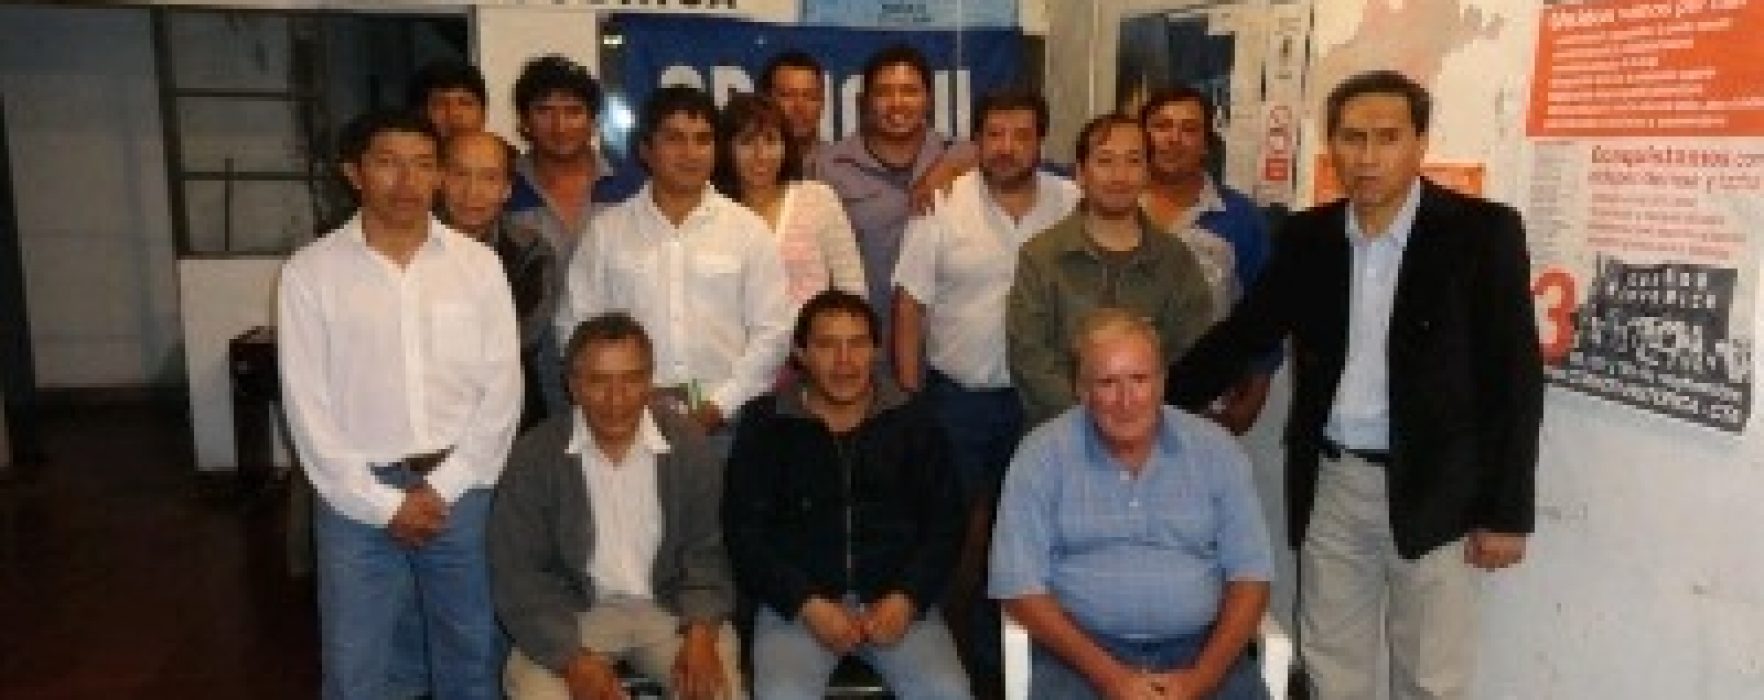 Repudio a la persecución de TELECOM Clarín sobre un dirigente gremial